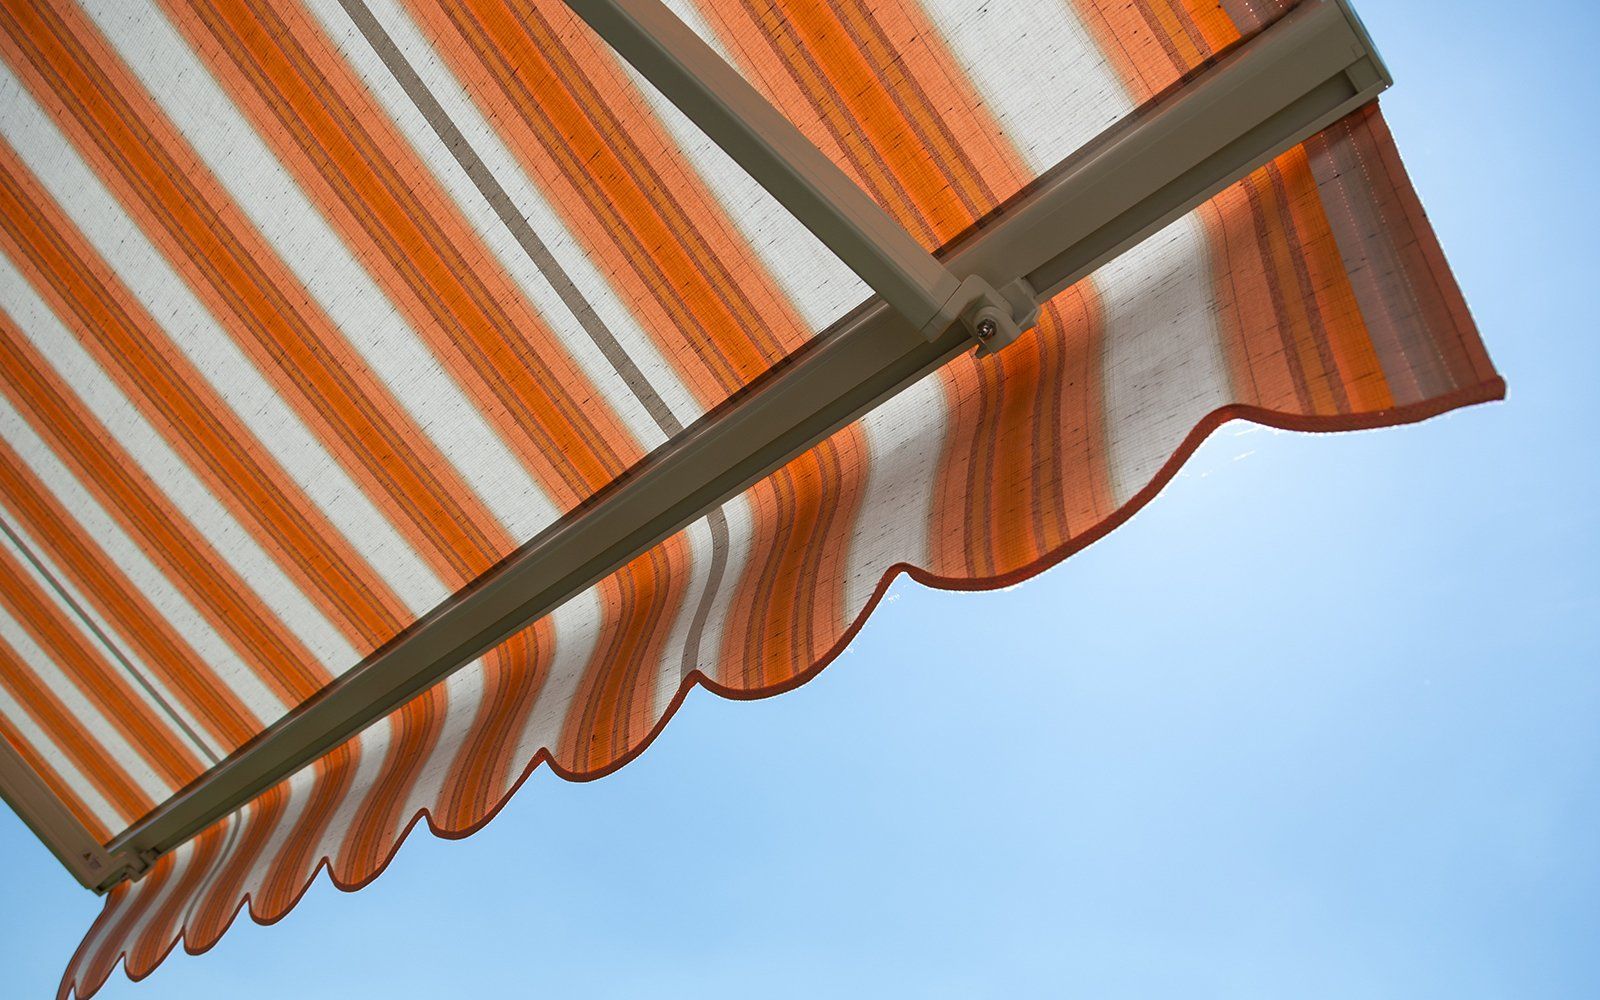 La tenda protegge dal sole caldo